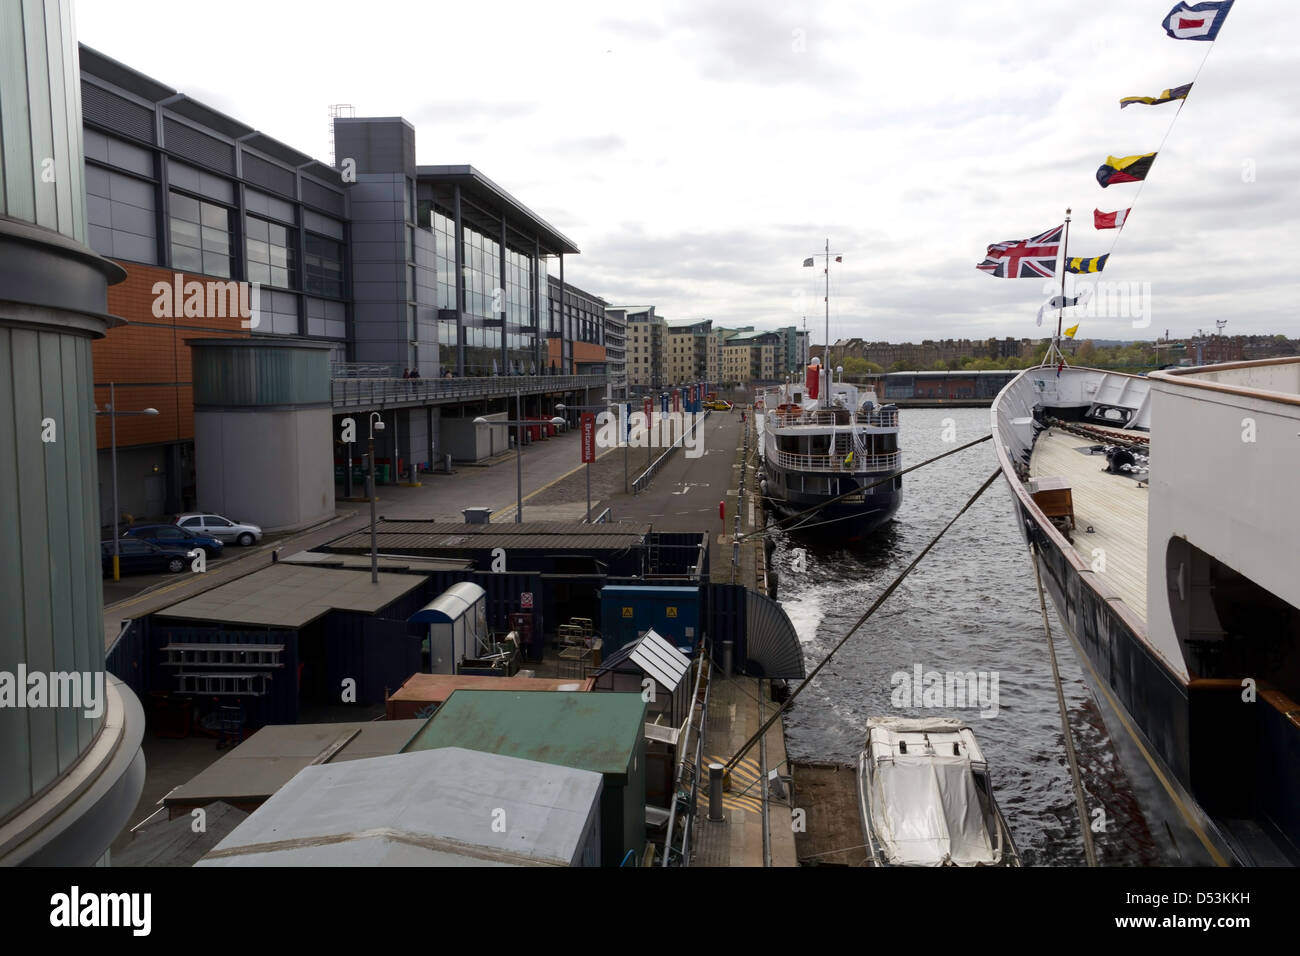 Der Pier in Leith, wo die königliche yacht, HMY Britannia festgemacht ist. Dies ist heute eine Touristenattraktion mit einem kontrollierten Eintrag. Stockfoto